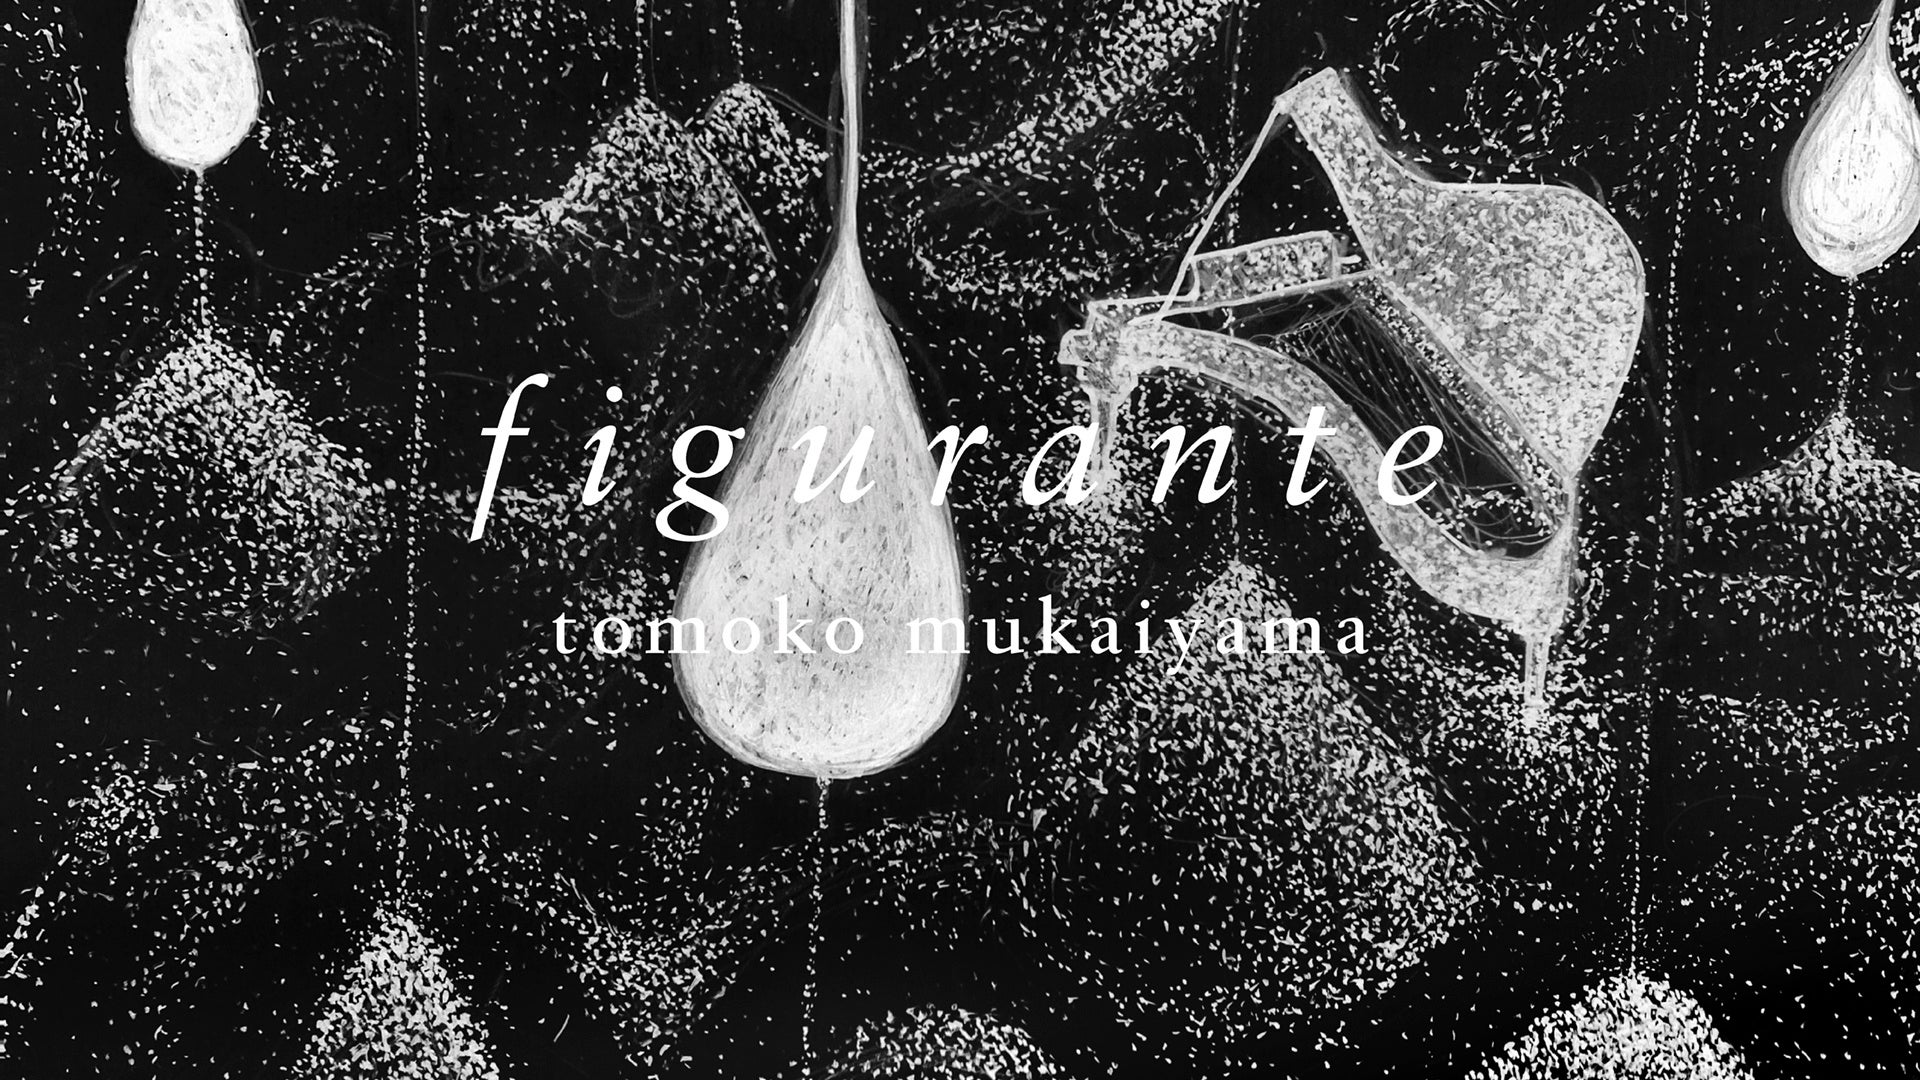 向井山朋子の新作インスタレーション・パフォーマンス『figurante』を寺田倉庫で開催